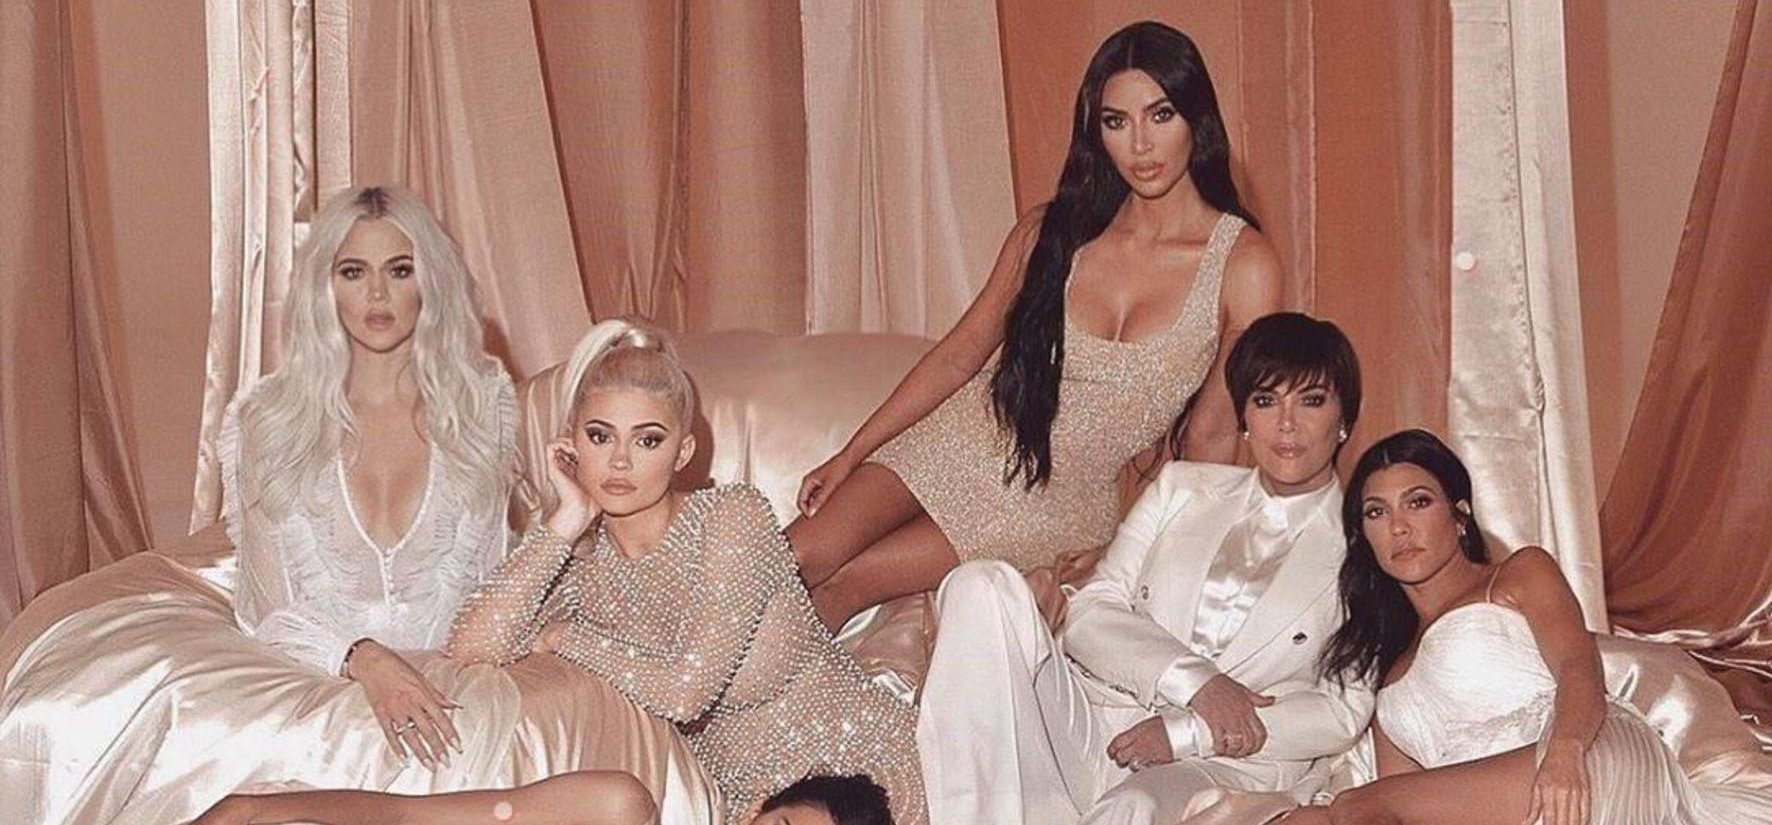 A Kardashian család luxusnyaralóját látva teljesen megéri szexvideót készíteni